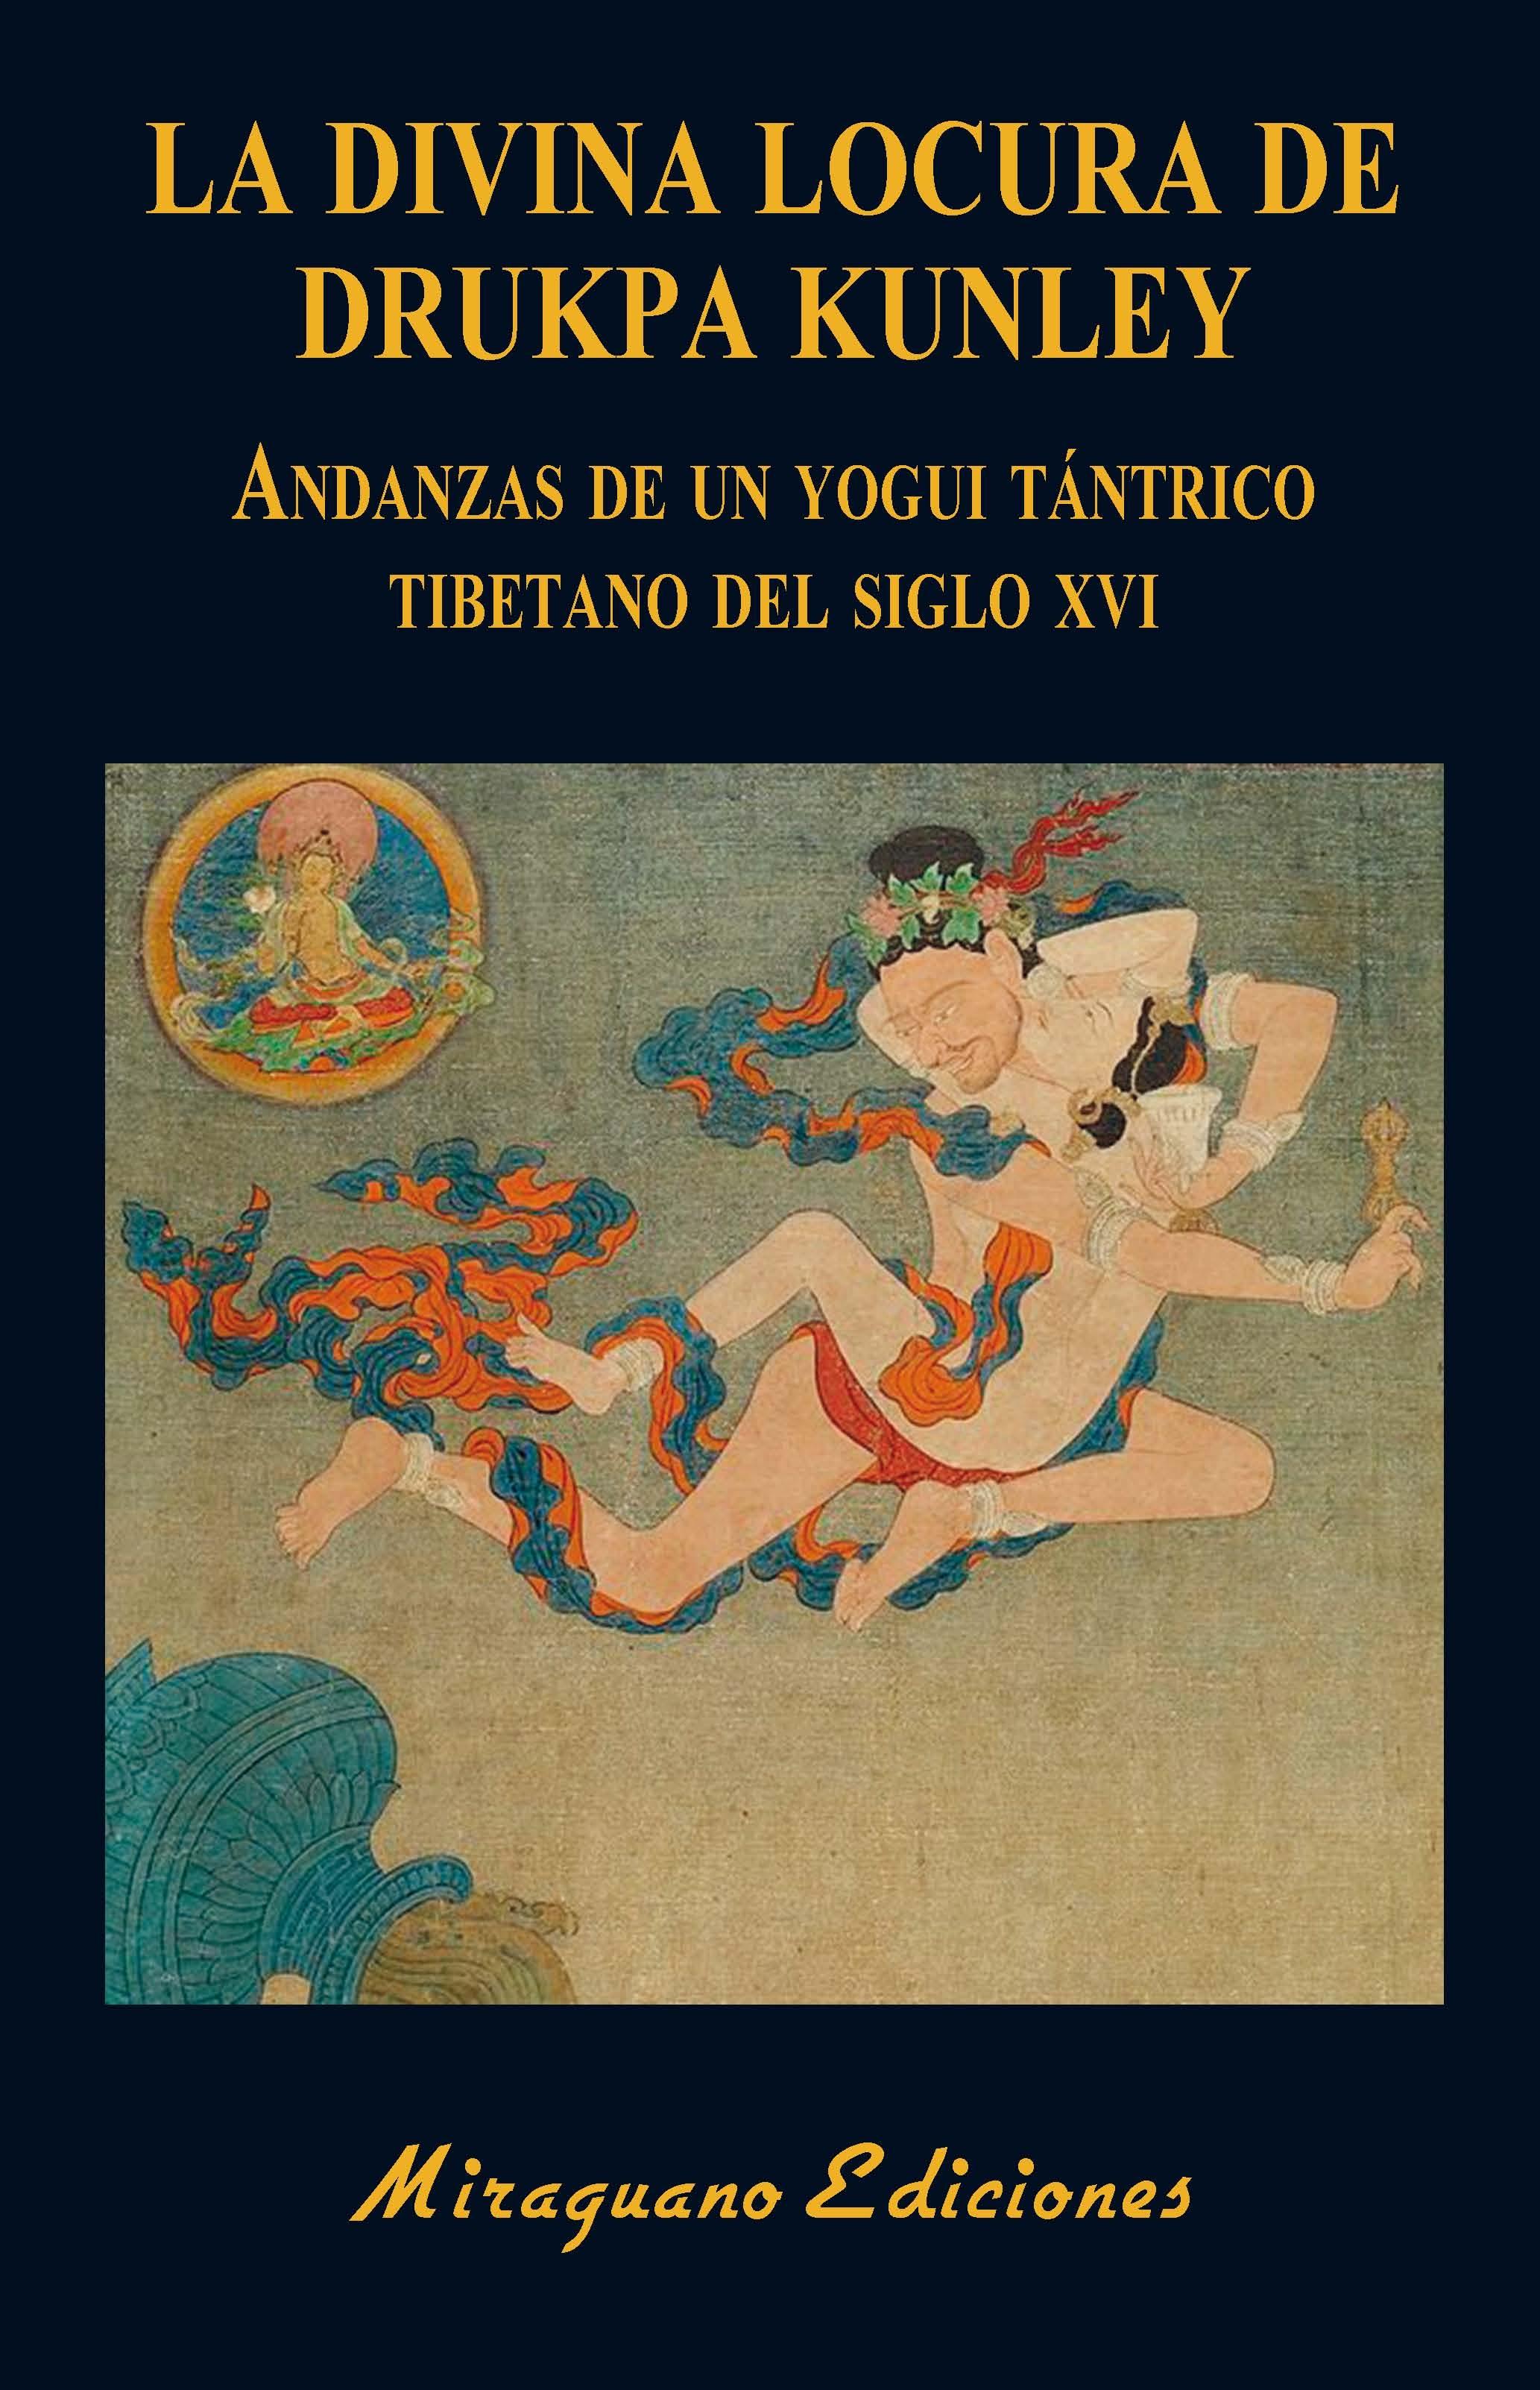 Divina locura de Drukpa Kunley, La "Andanzas de un yogui tántrico tibetano del siglo XVI"